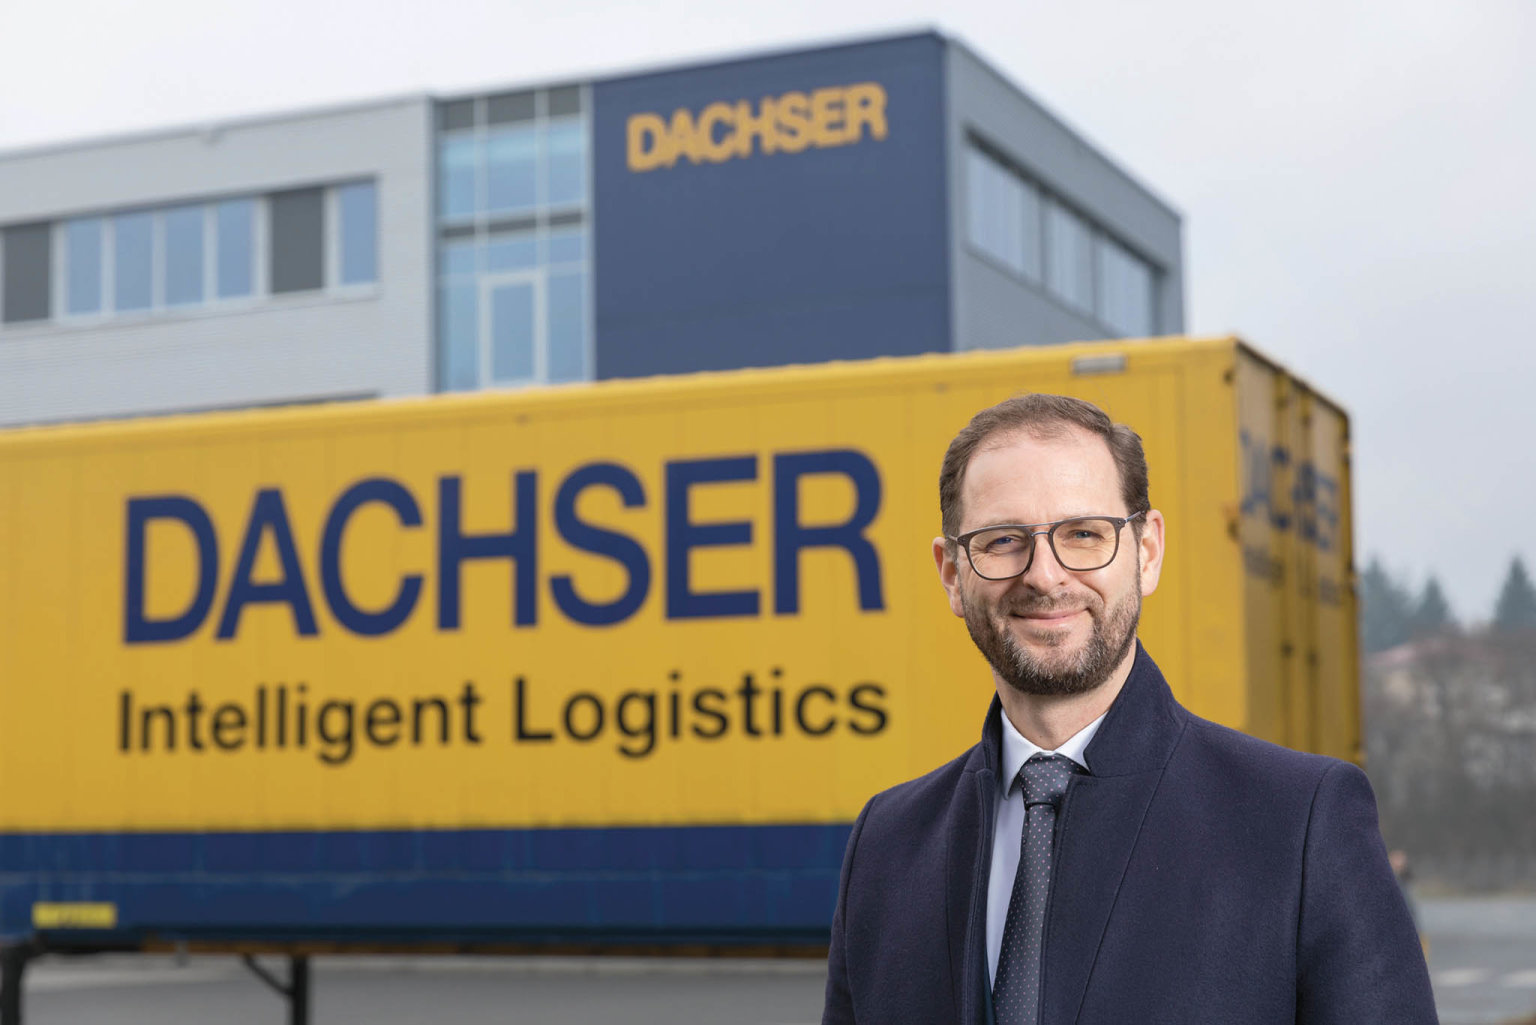 Jan Pihar pøed výmìnnou nástavbou. Od zaèátku roku Dachser vybavil 8500 tìchto pøepravních kontejnerù inteligentními sledovacími zaøízeními.